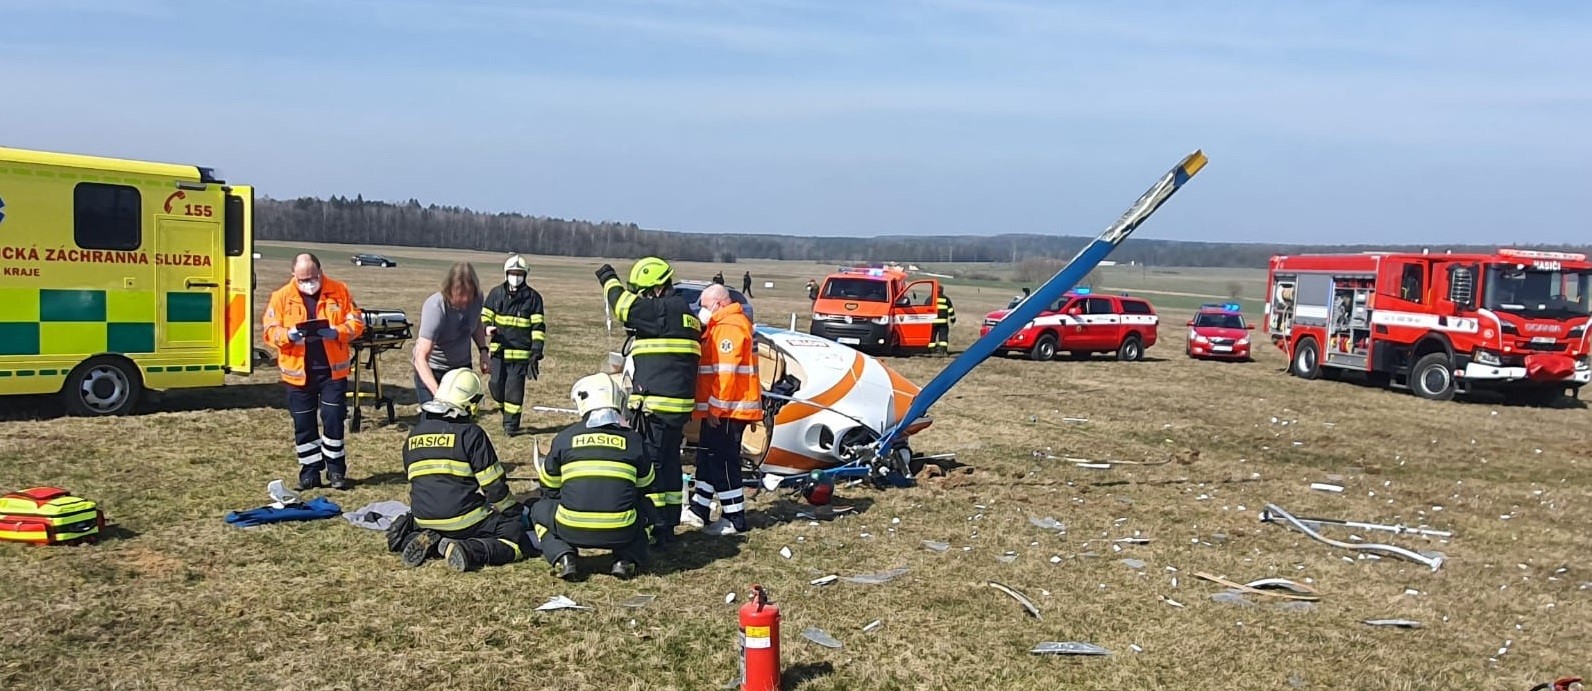 SČK_hasiči pomáhali při záchraně osob u nehody vrtulníku_do textu.jpg